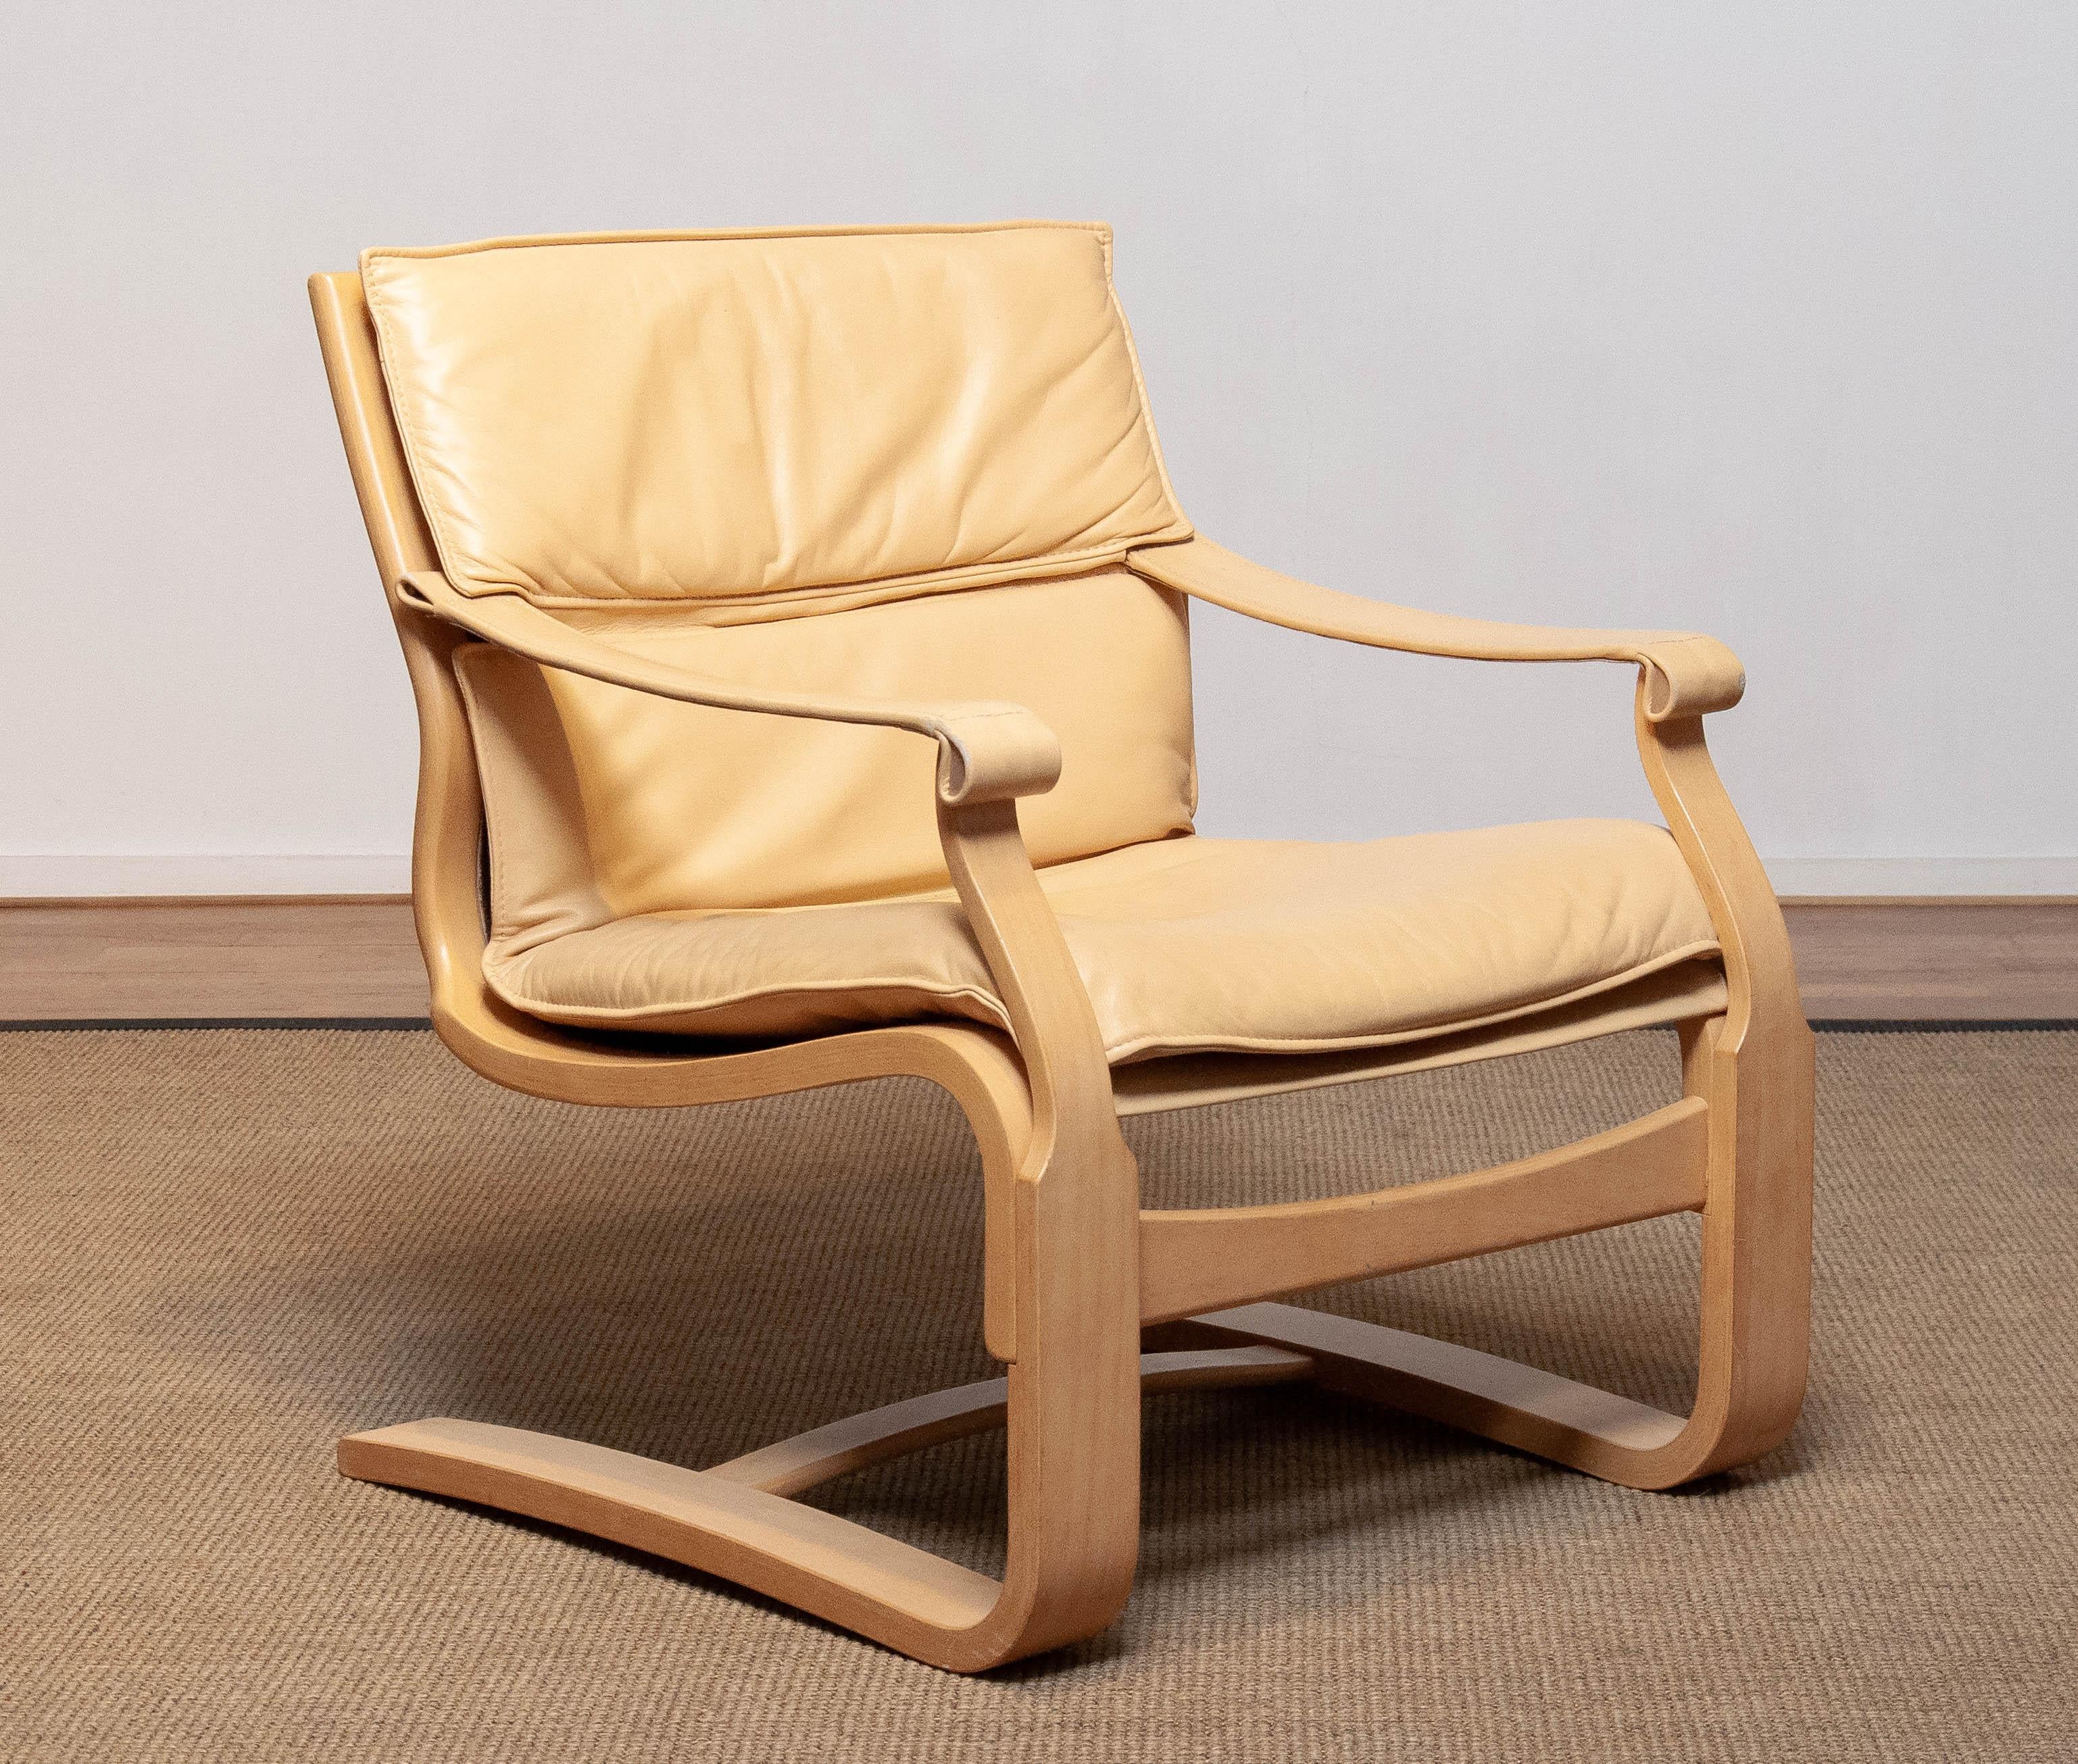 Scandinavian Modern Buche Bugholz Loungesessel entworfen von Ake Fribytter und hergestellt von Nelo in den 1970er Jahren mit beige / creme Leder gepolstert und in insgesamt guten und sehr bequemen Zustand.
Bitte beachten Sie, dass wir zwei Stühle in